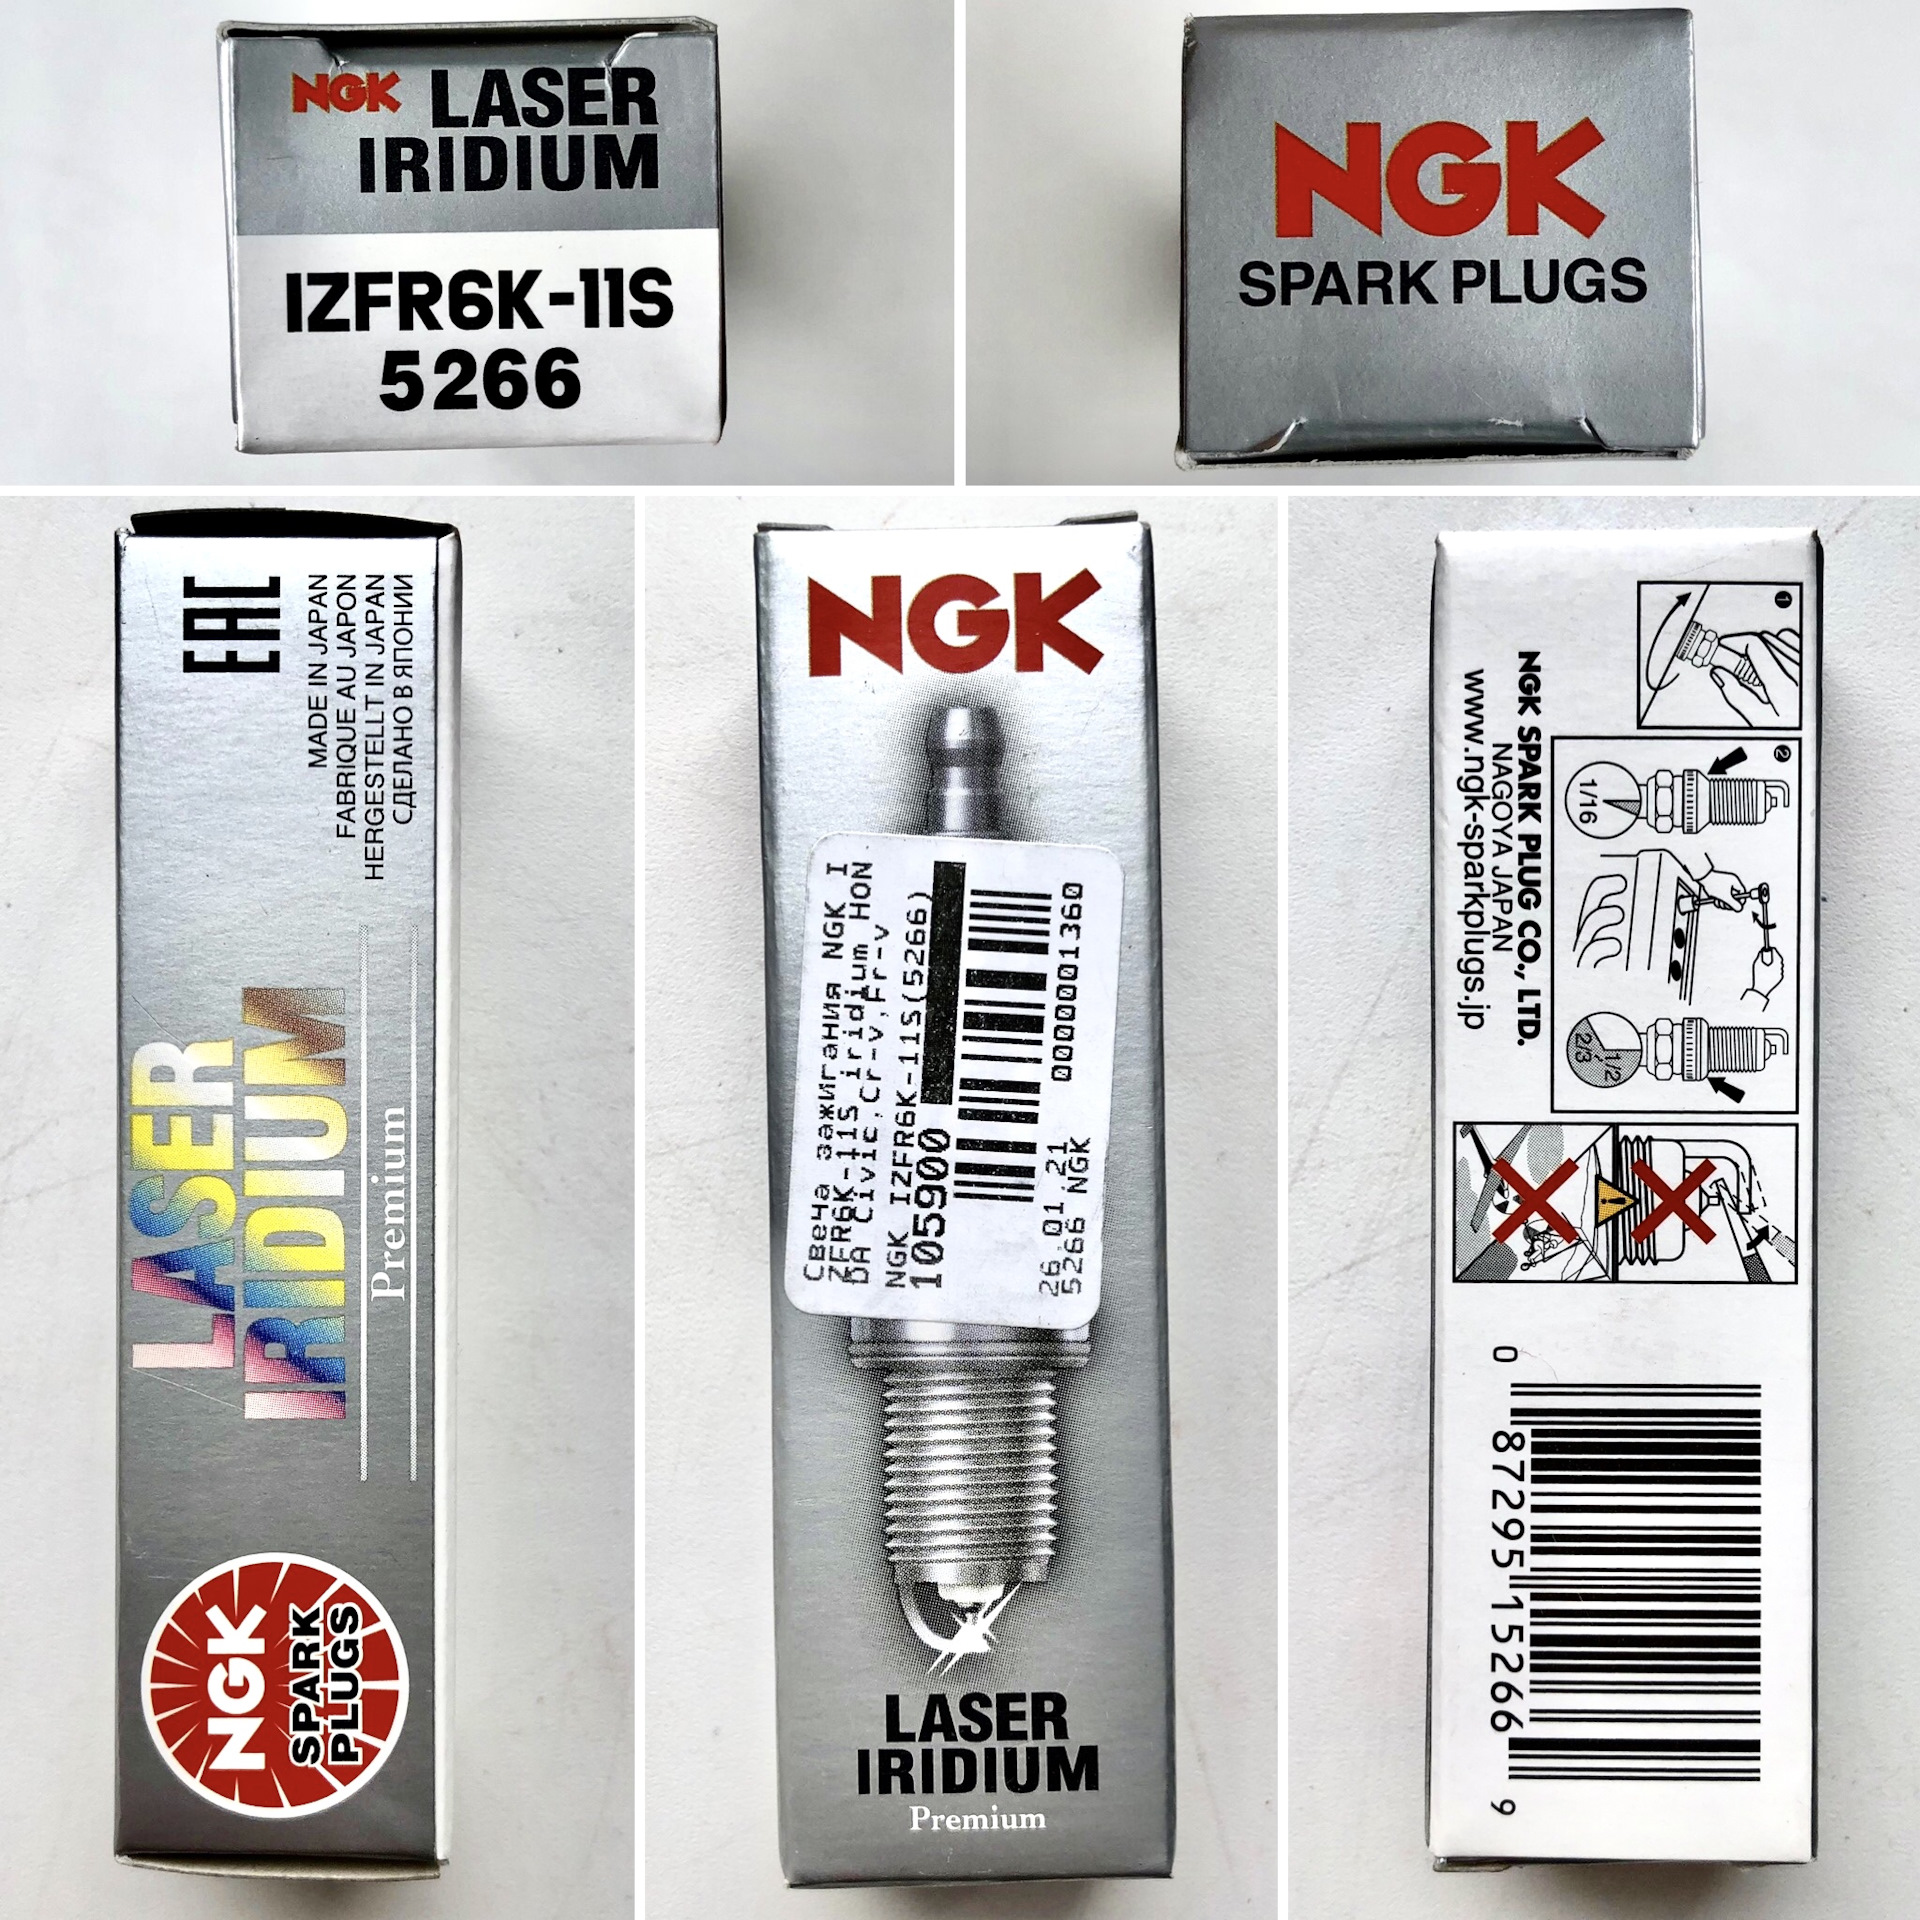 Как отличить подделку ngk. NGK izfr6k-11 размер ключа. Izfr6k-11s от NGK В упаковке NGK. Свечи зажигания Хонда Аккорд 8 2.4. Оригинальная упаковка свечи NGK izfr6k11s.